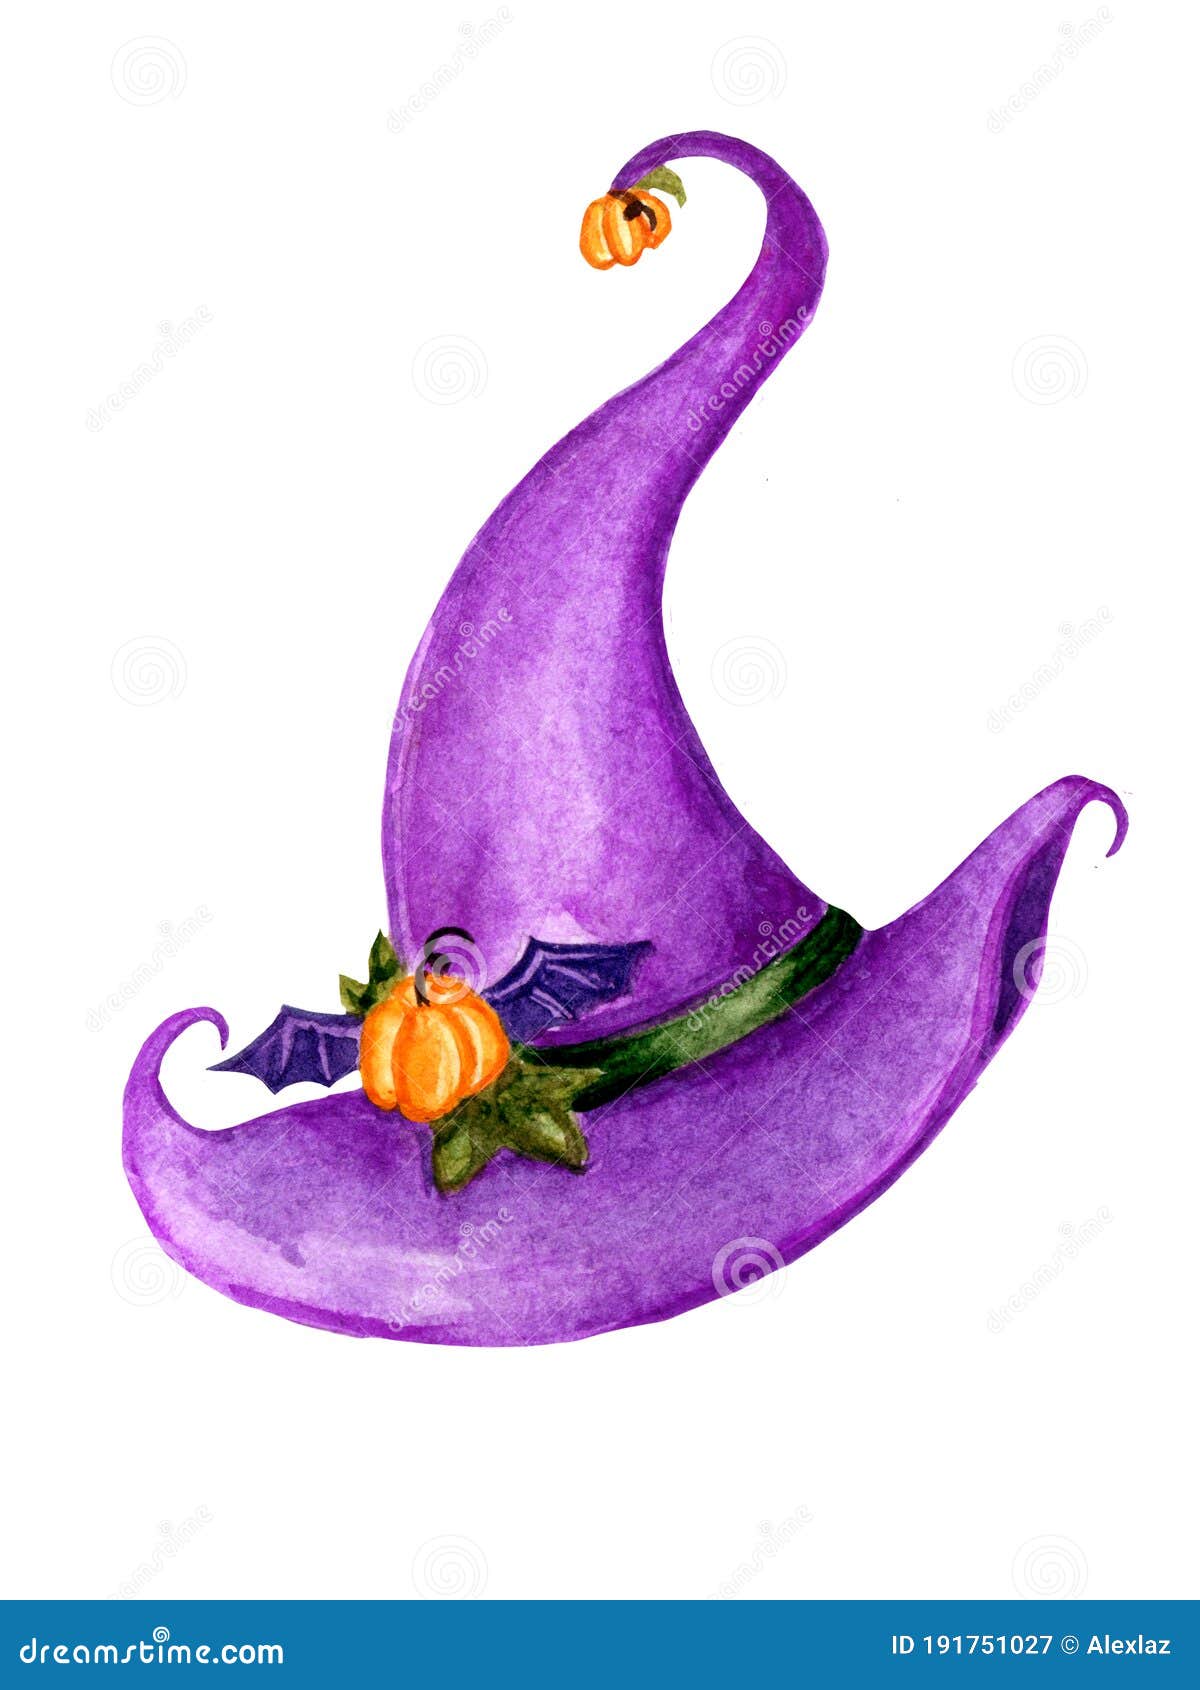 Coruja De Desenho Animado Fofo De Halloween Com Chapéu Roxo De Bruxa  Ilustração do Vetor - Ilustração de divertimento, nave: 190537576